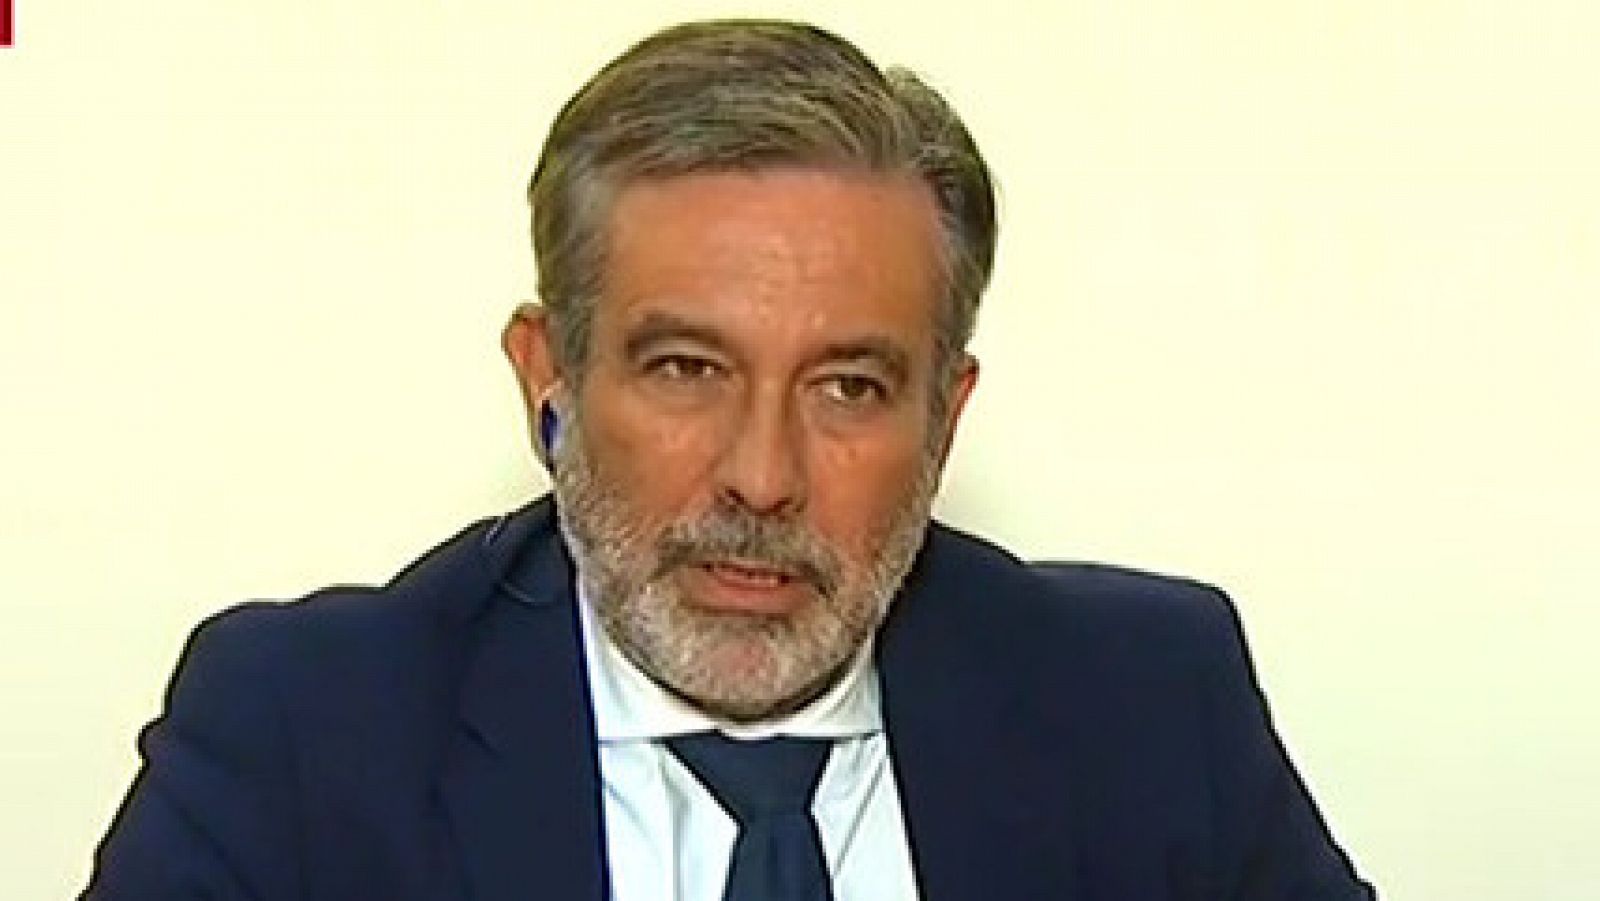 El consejero de Justicia de Madrid, sobre el pacto del CGPJ entre Casado y Sánchez: "Hay que negar un acuerdo al 99%"